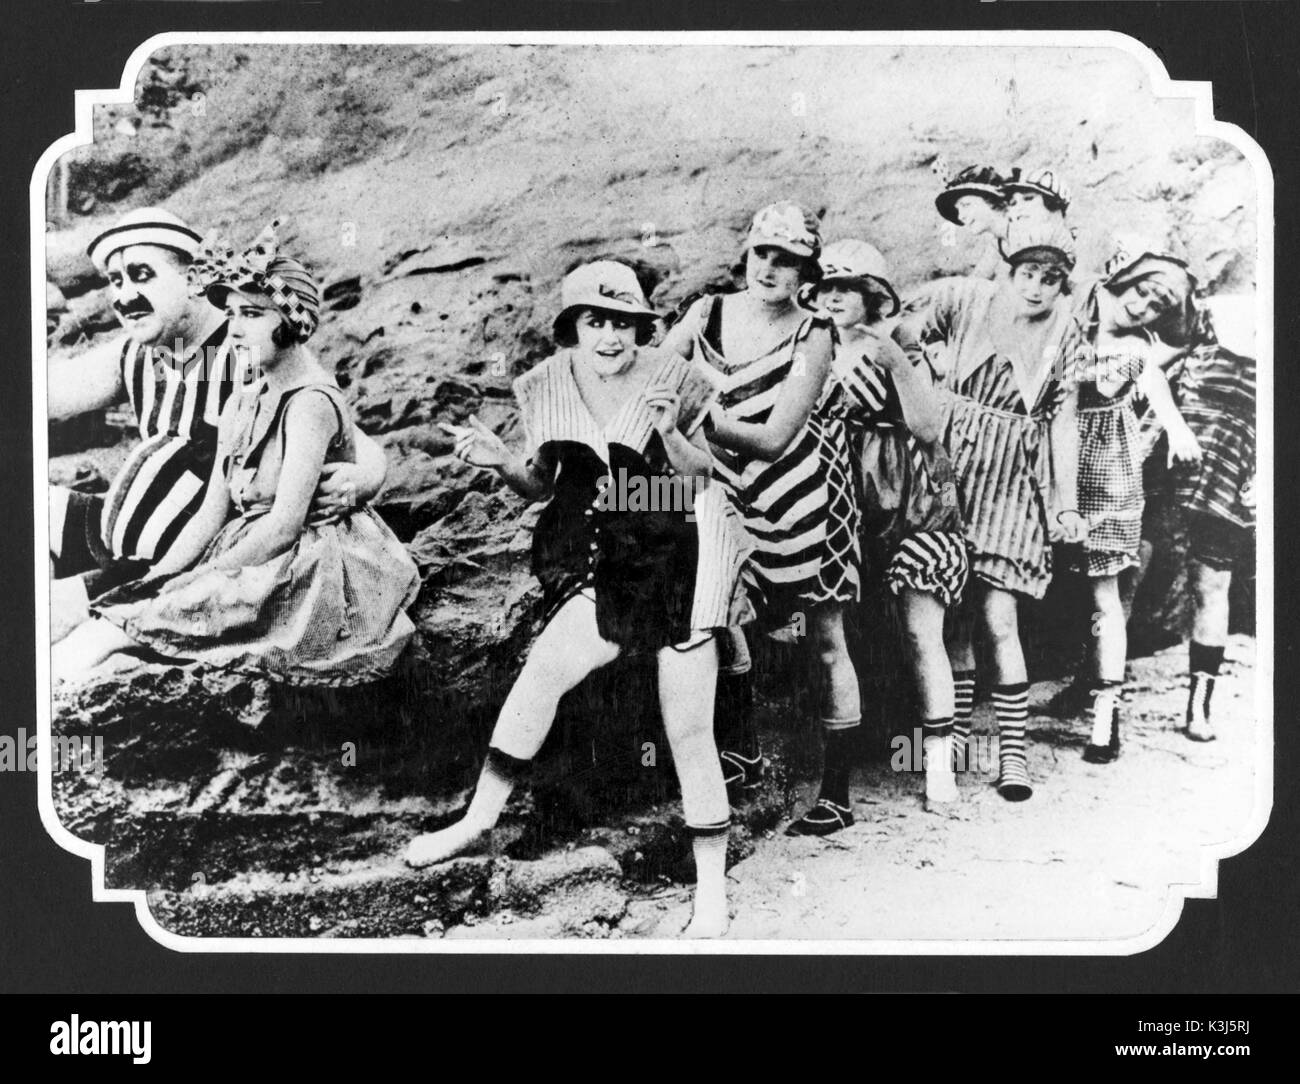 UNIDENTIFIED 1910s Mack Sennett Comedy MACK SWAIN con il suo braccio round del Gloria Swanson con il Mack Sennett bellezze di balneazione Foto Stock